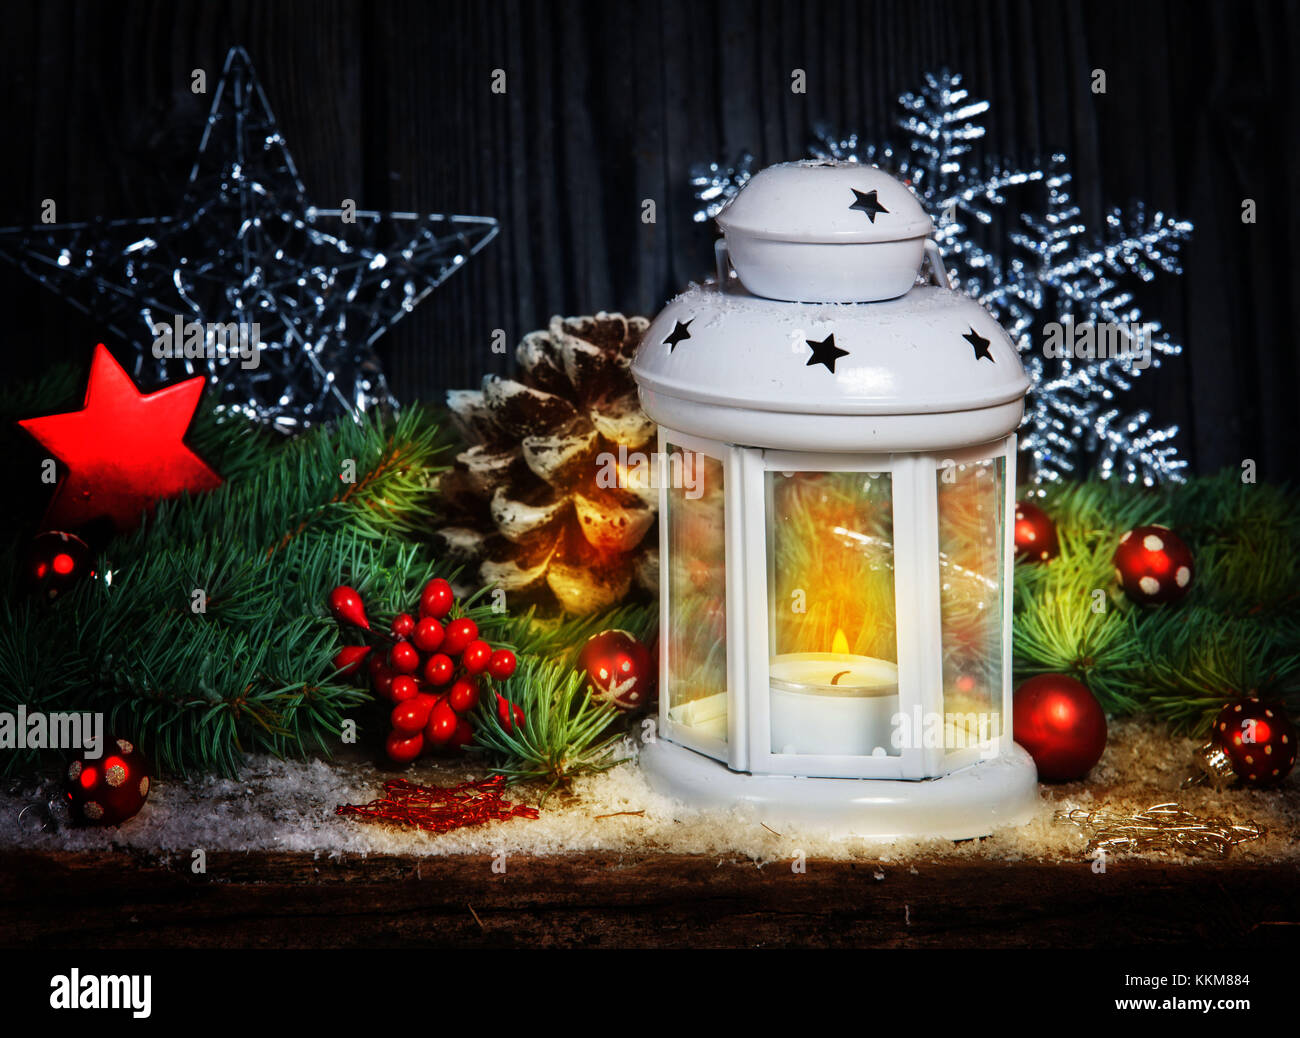 Decorazioni Natalizie Lanterne.Decorazione Di Natale Con La Lanterna Foto Stock Alamy